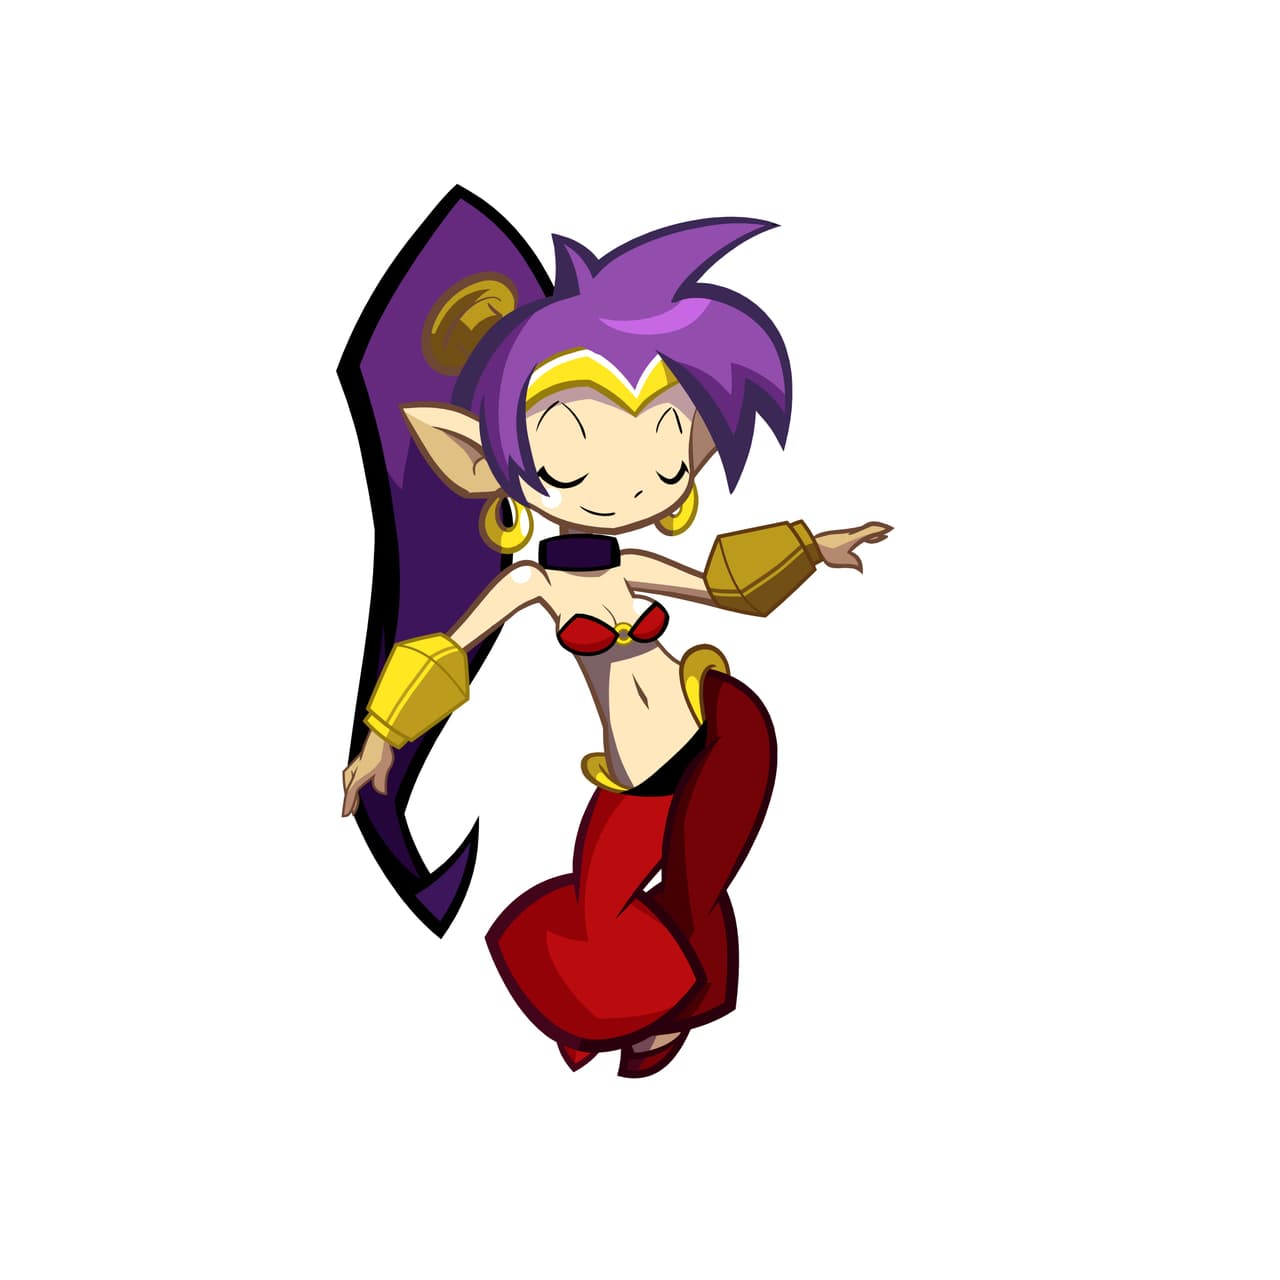 Shantae : Half-Genie Hero